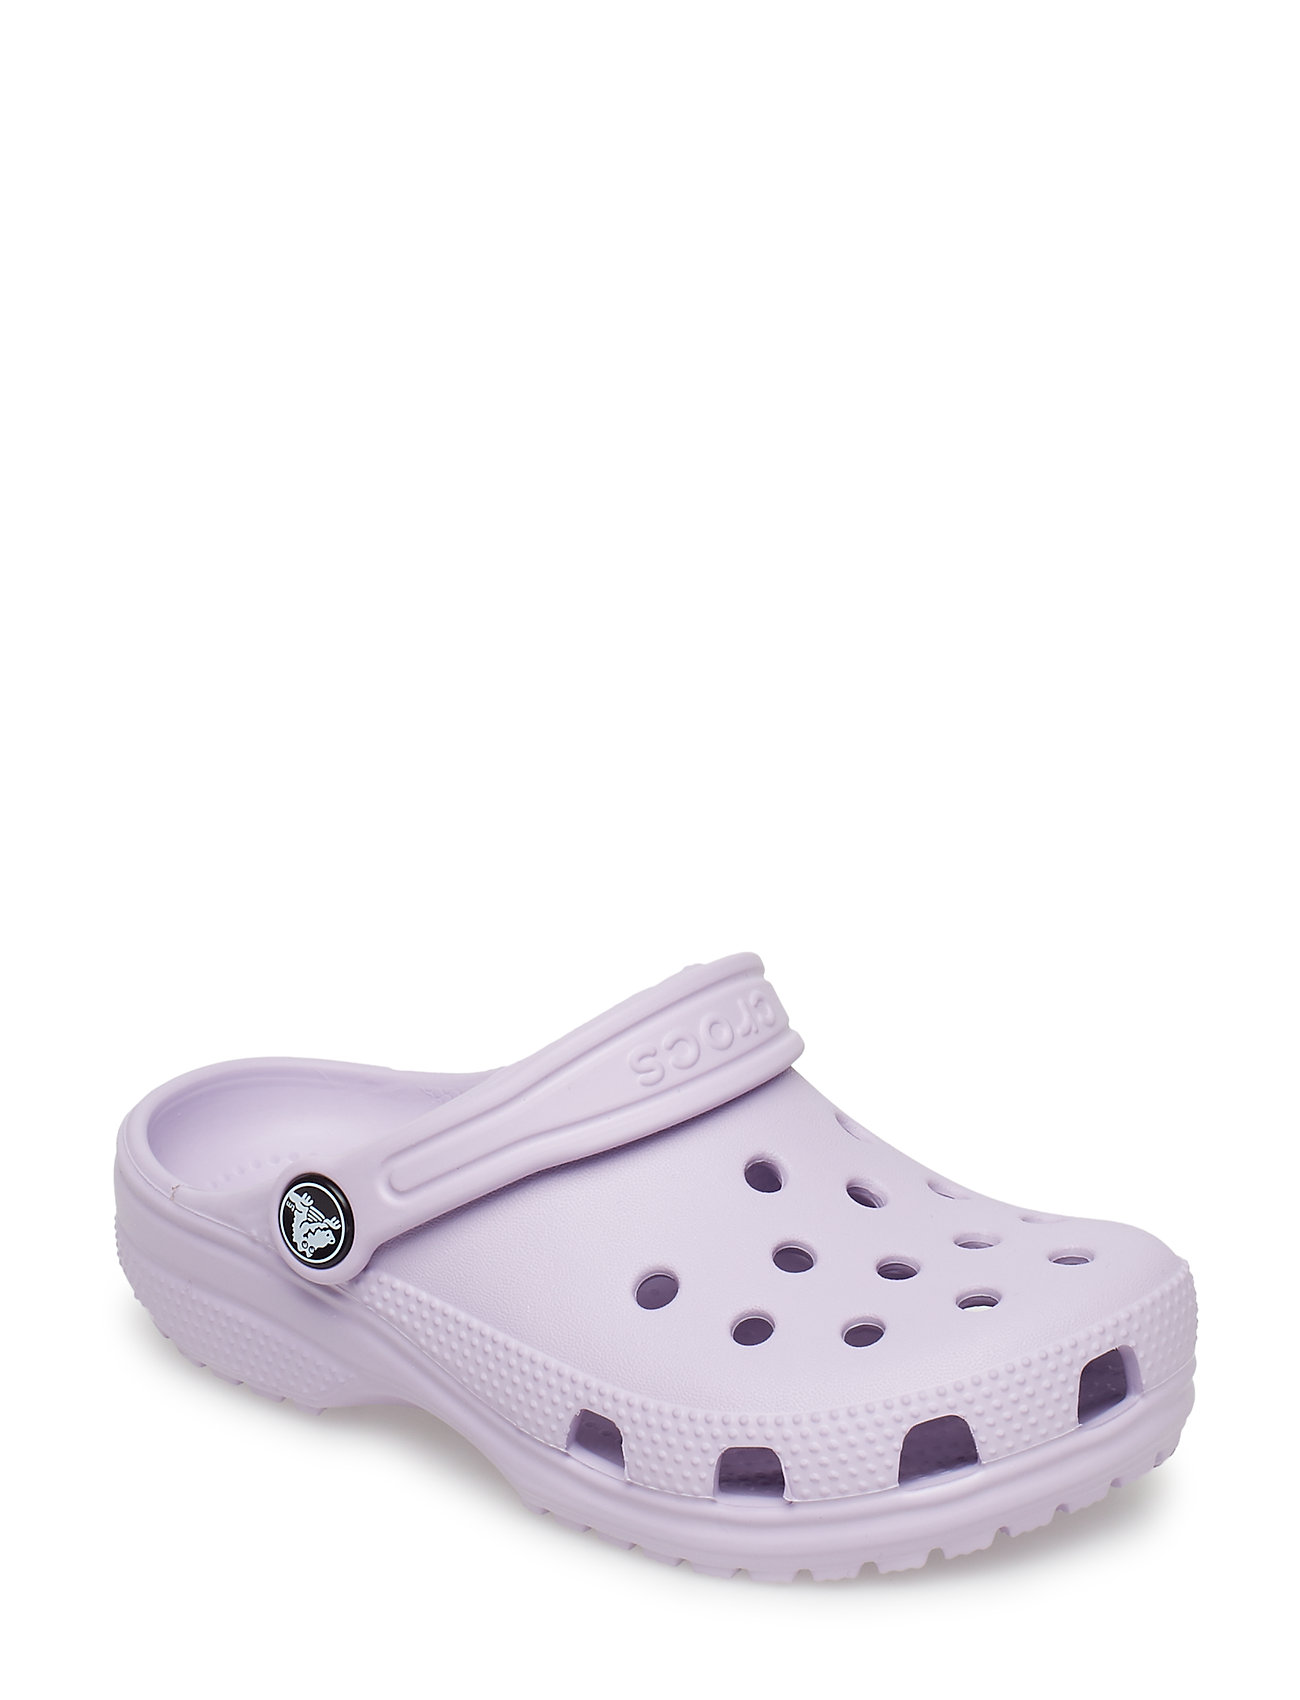 Crocs Classic Clog (Lavender), (21.59 